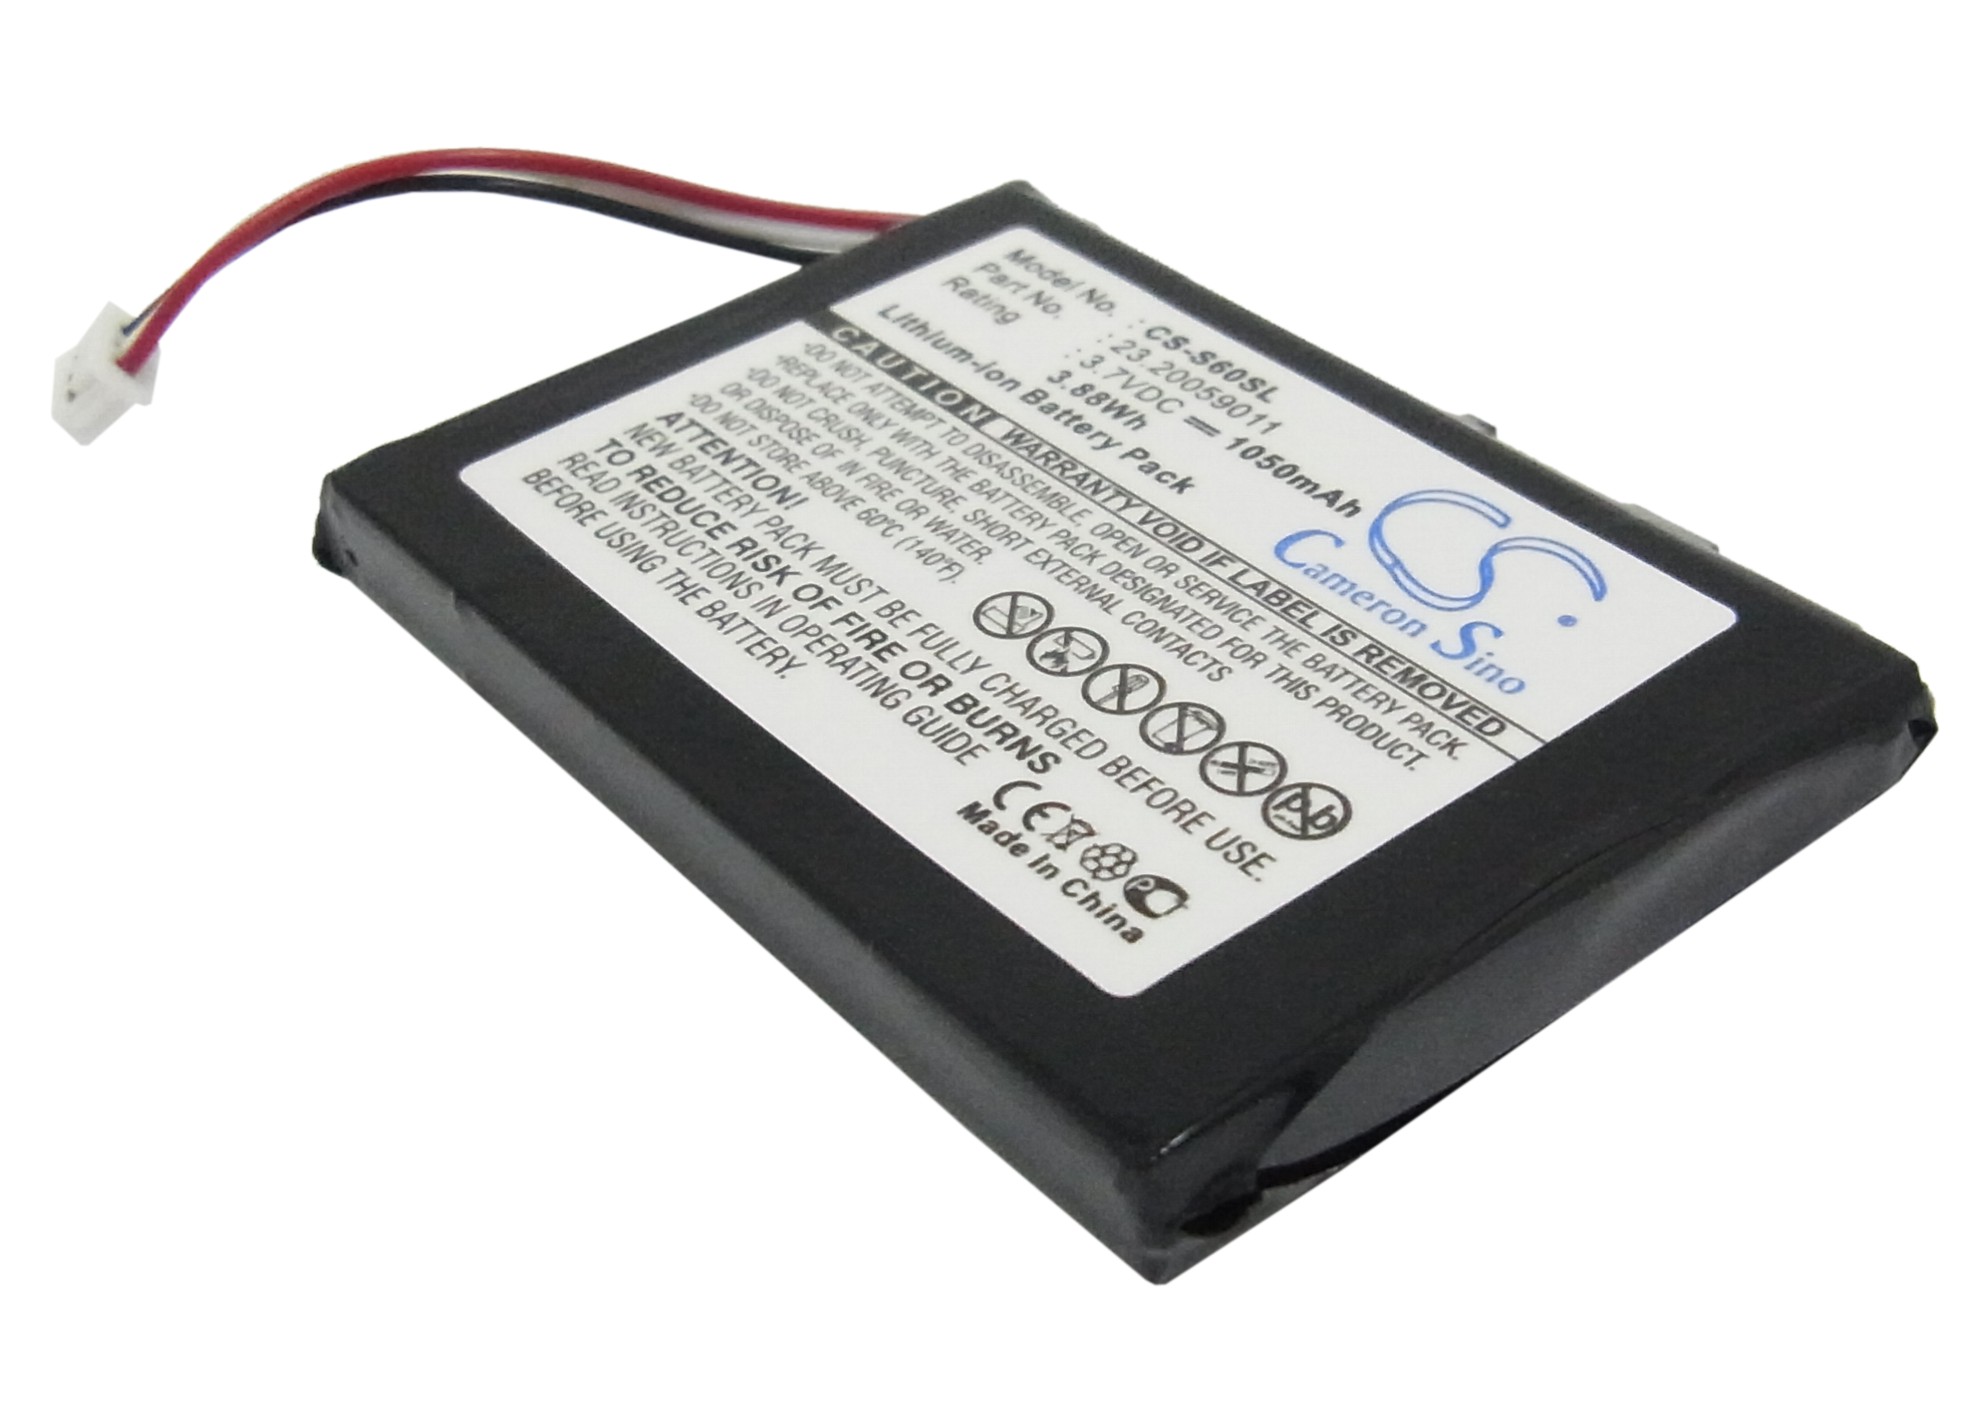 Cameron Sino Battery for Acer S10 S50 S60 23.20059011 Pocket PC PDA CS-S60SL 3.7v 1050mAh